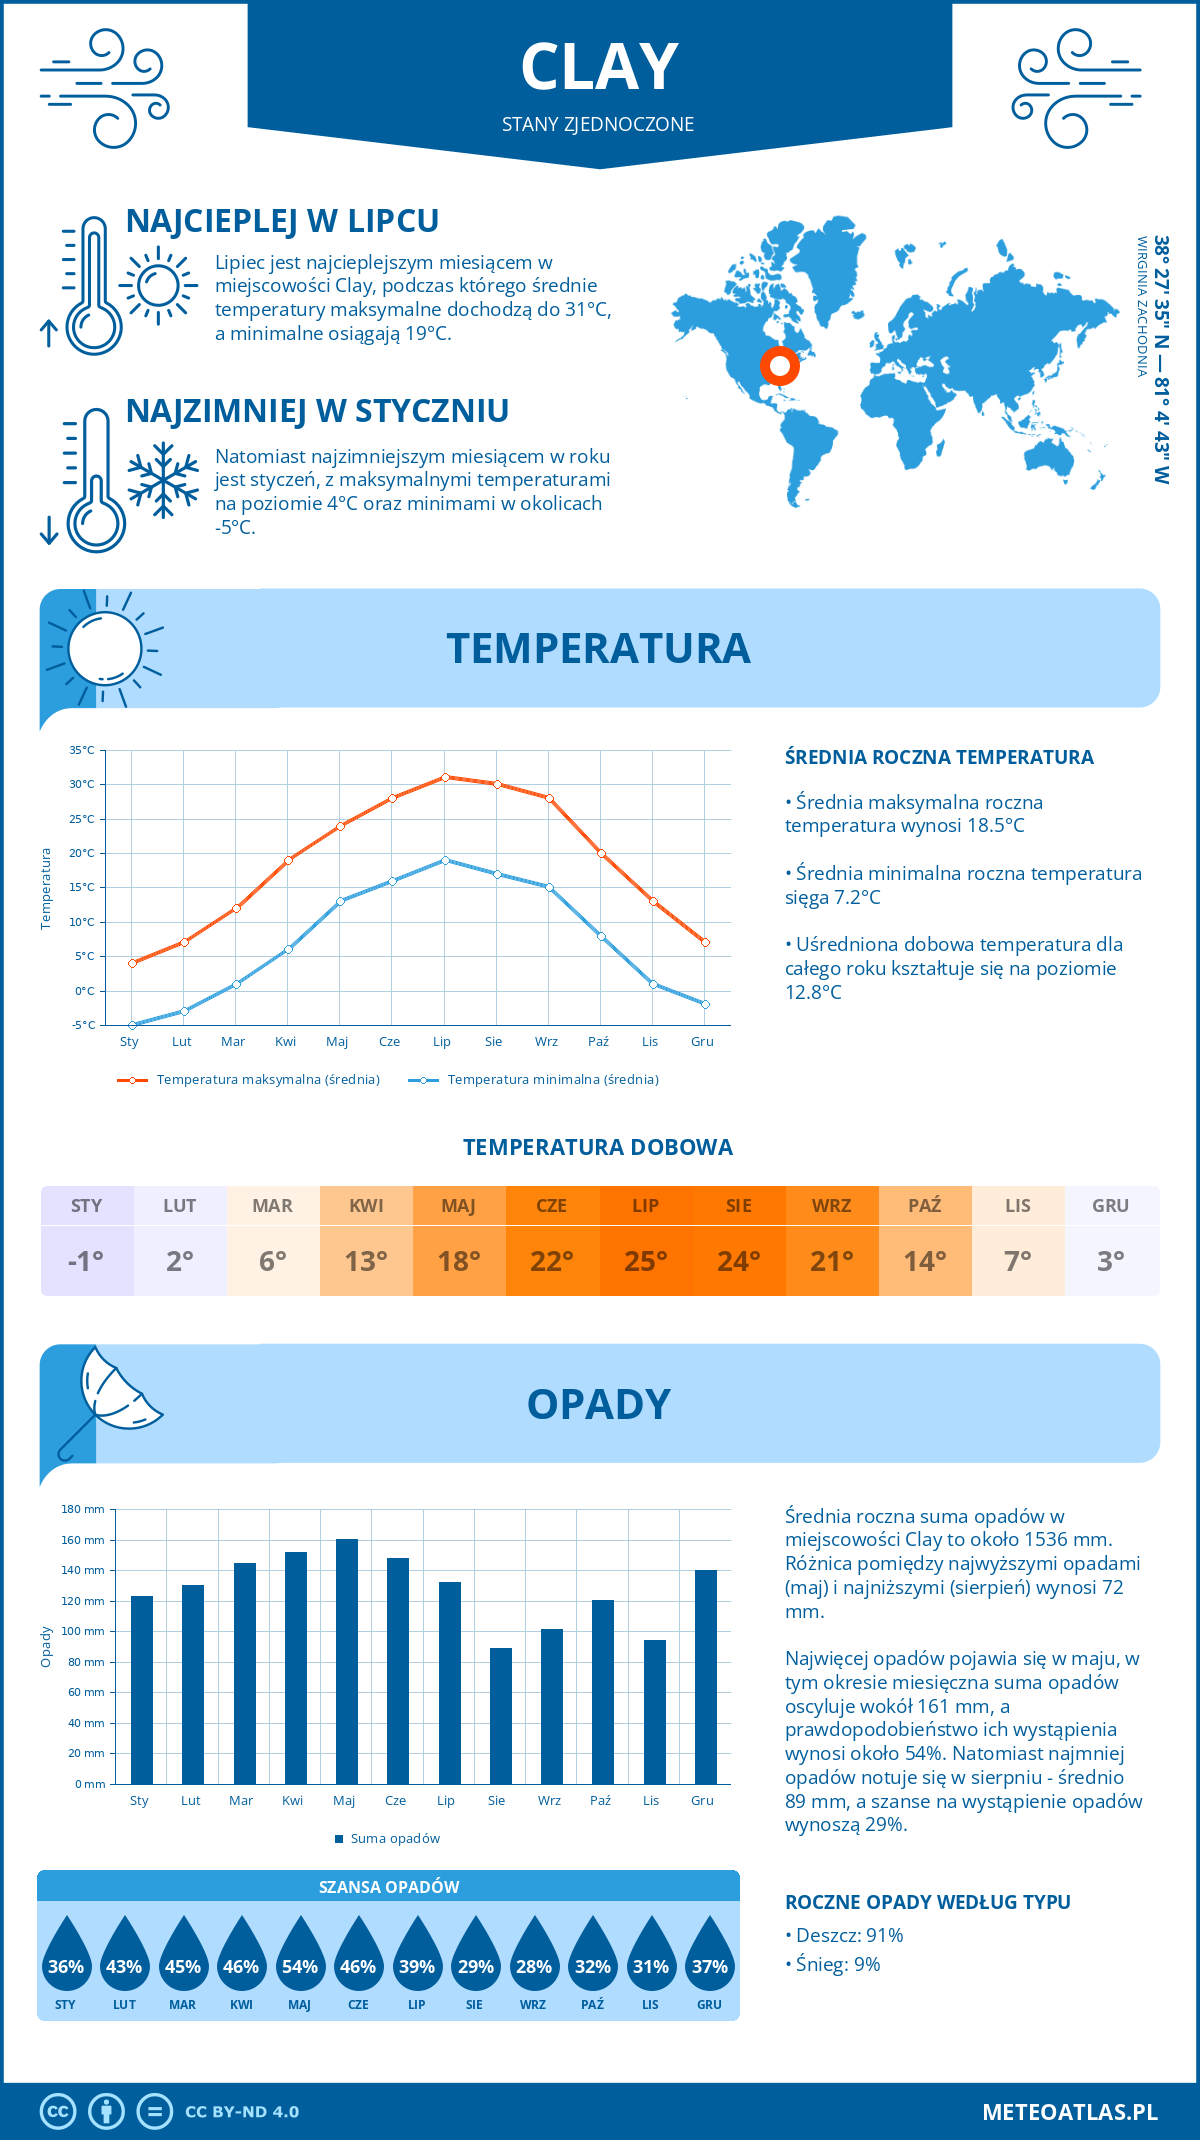 Pogoda Clay (Stany Zjednoczone). Temperatura oraz opady.